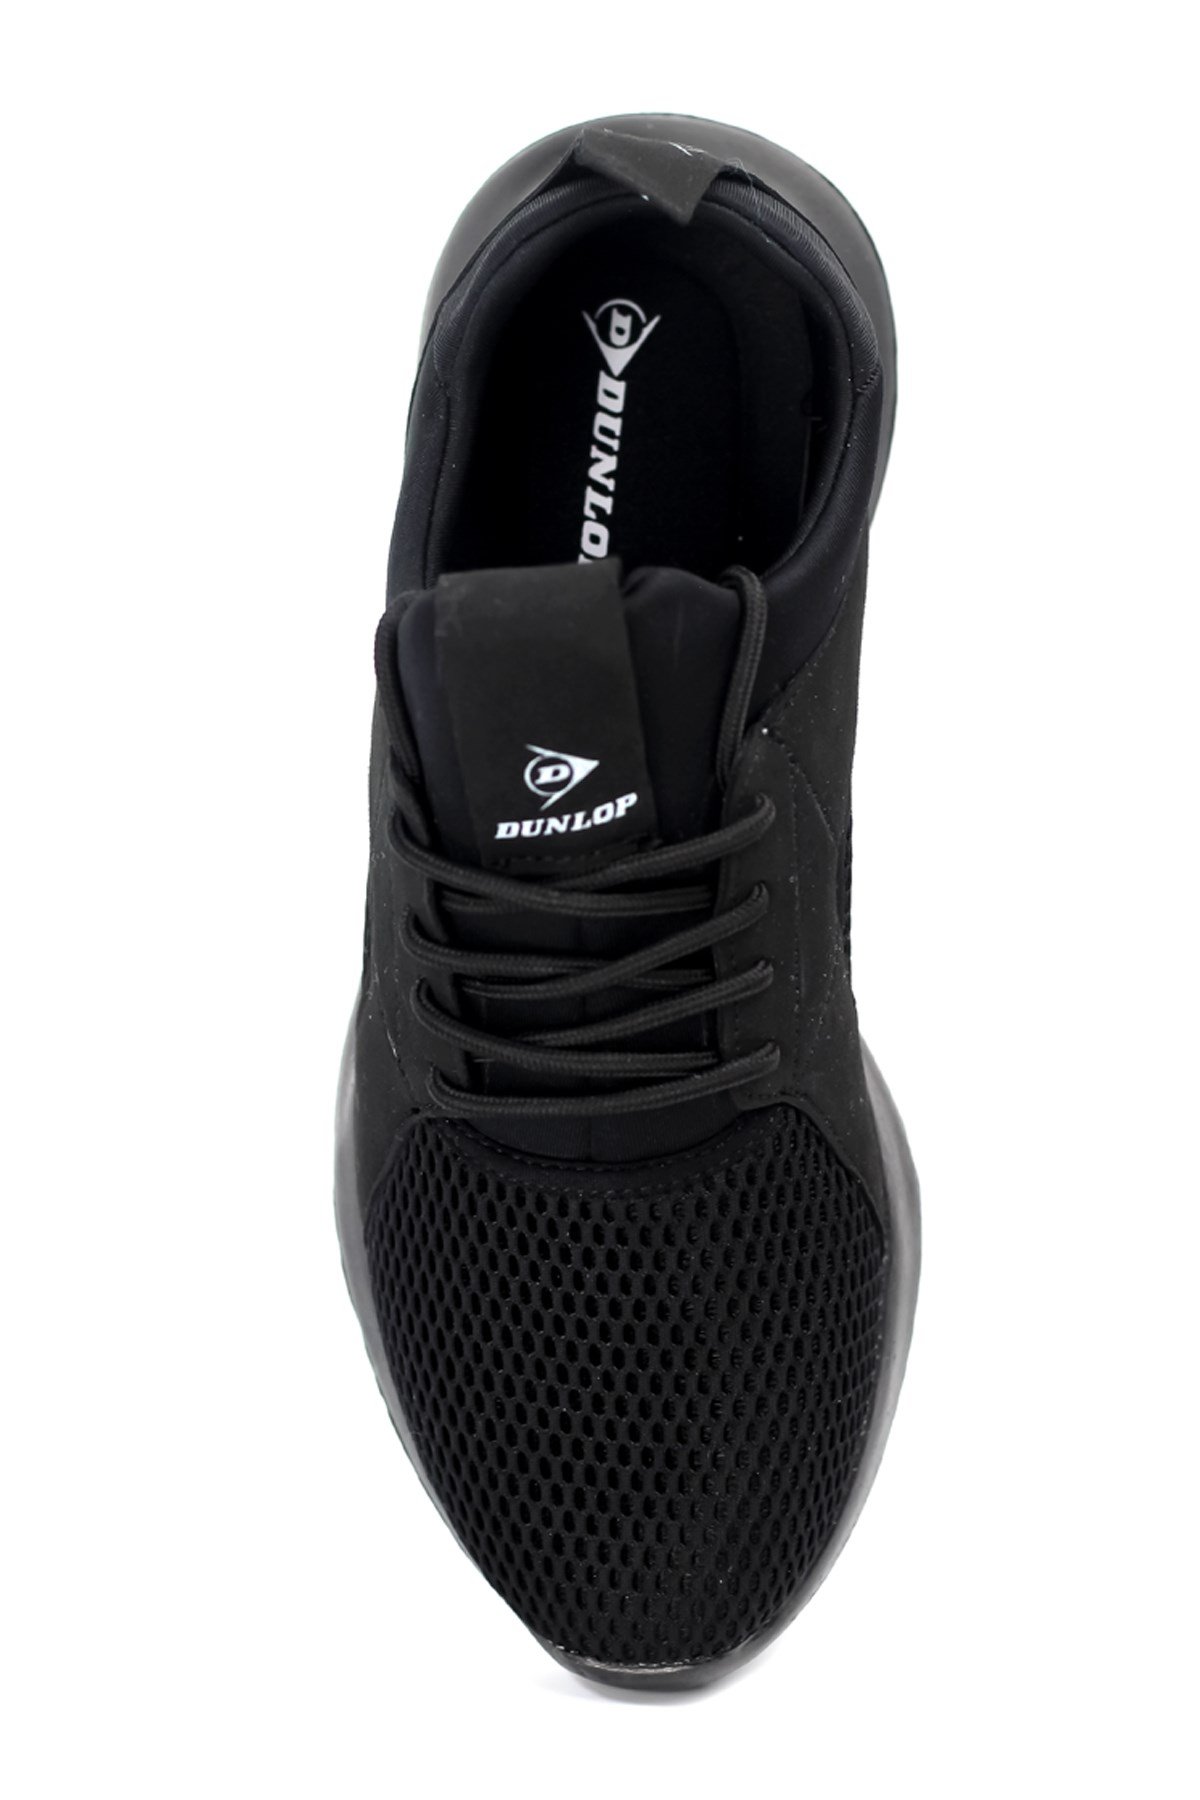 Dunlop Erkek Bağcıklı Sneakers G42M114100-Siyah